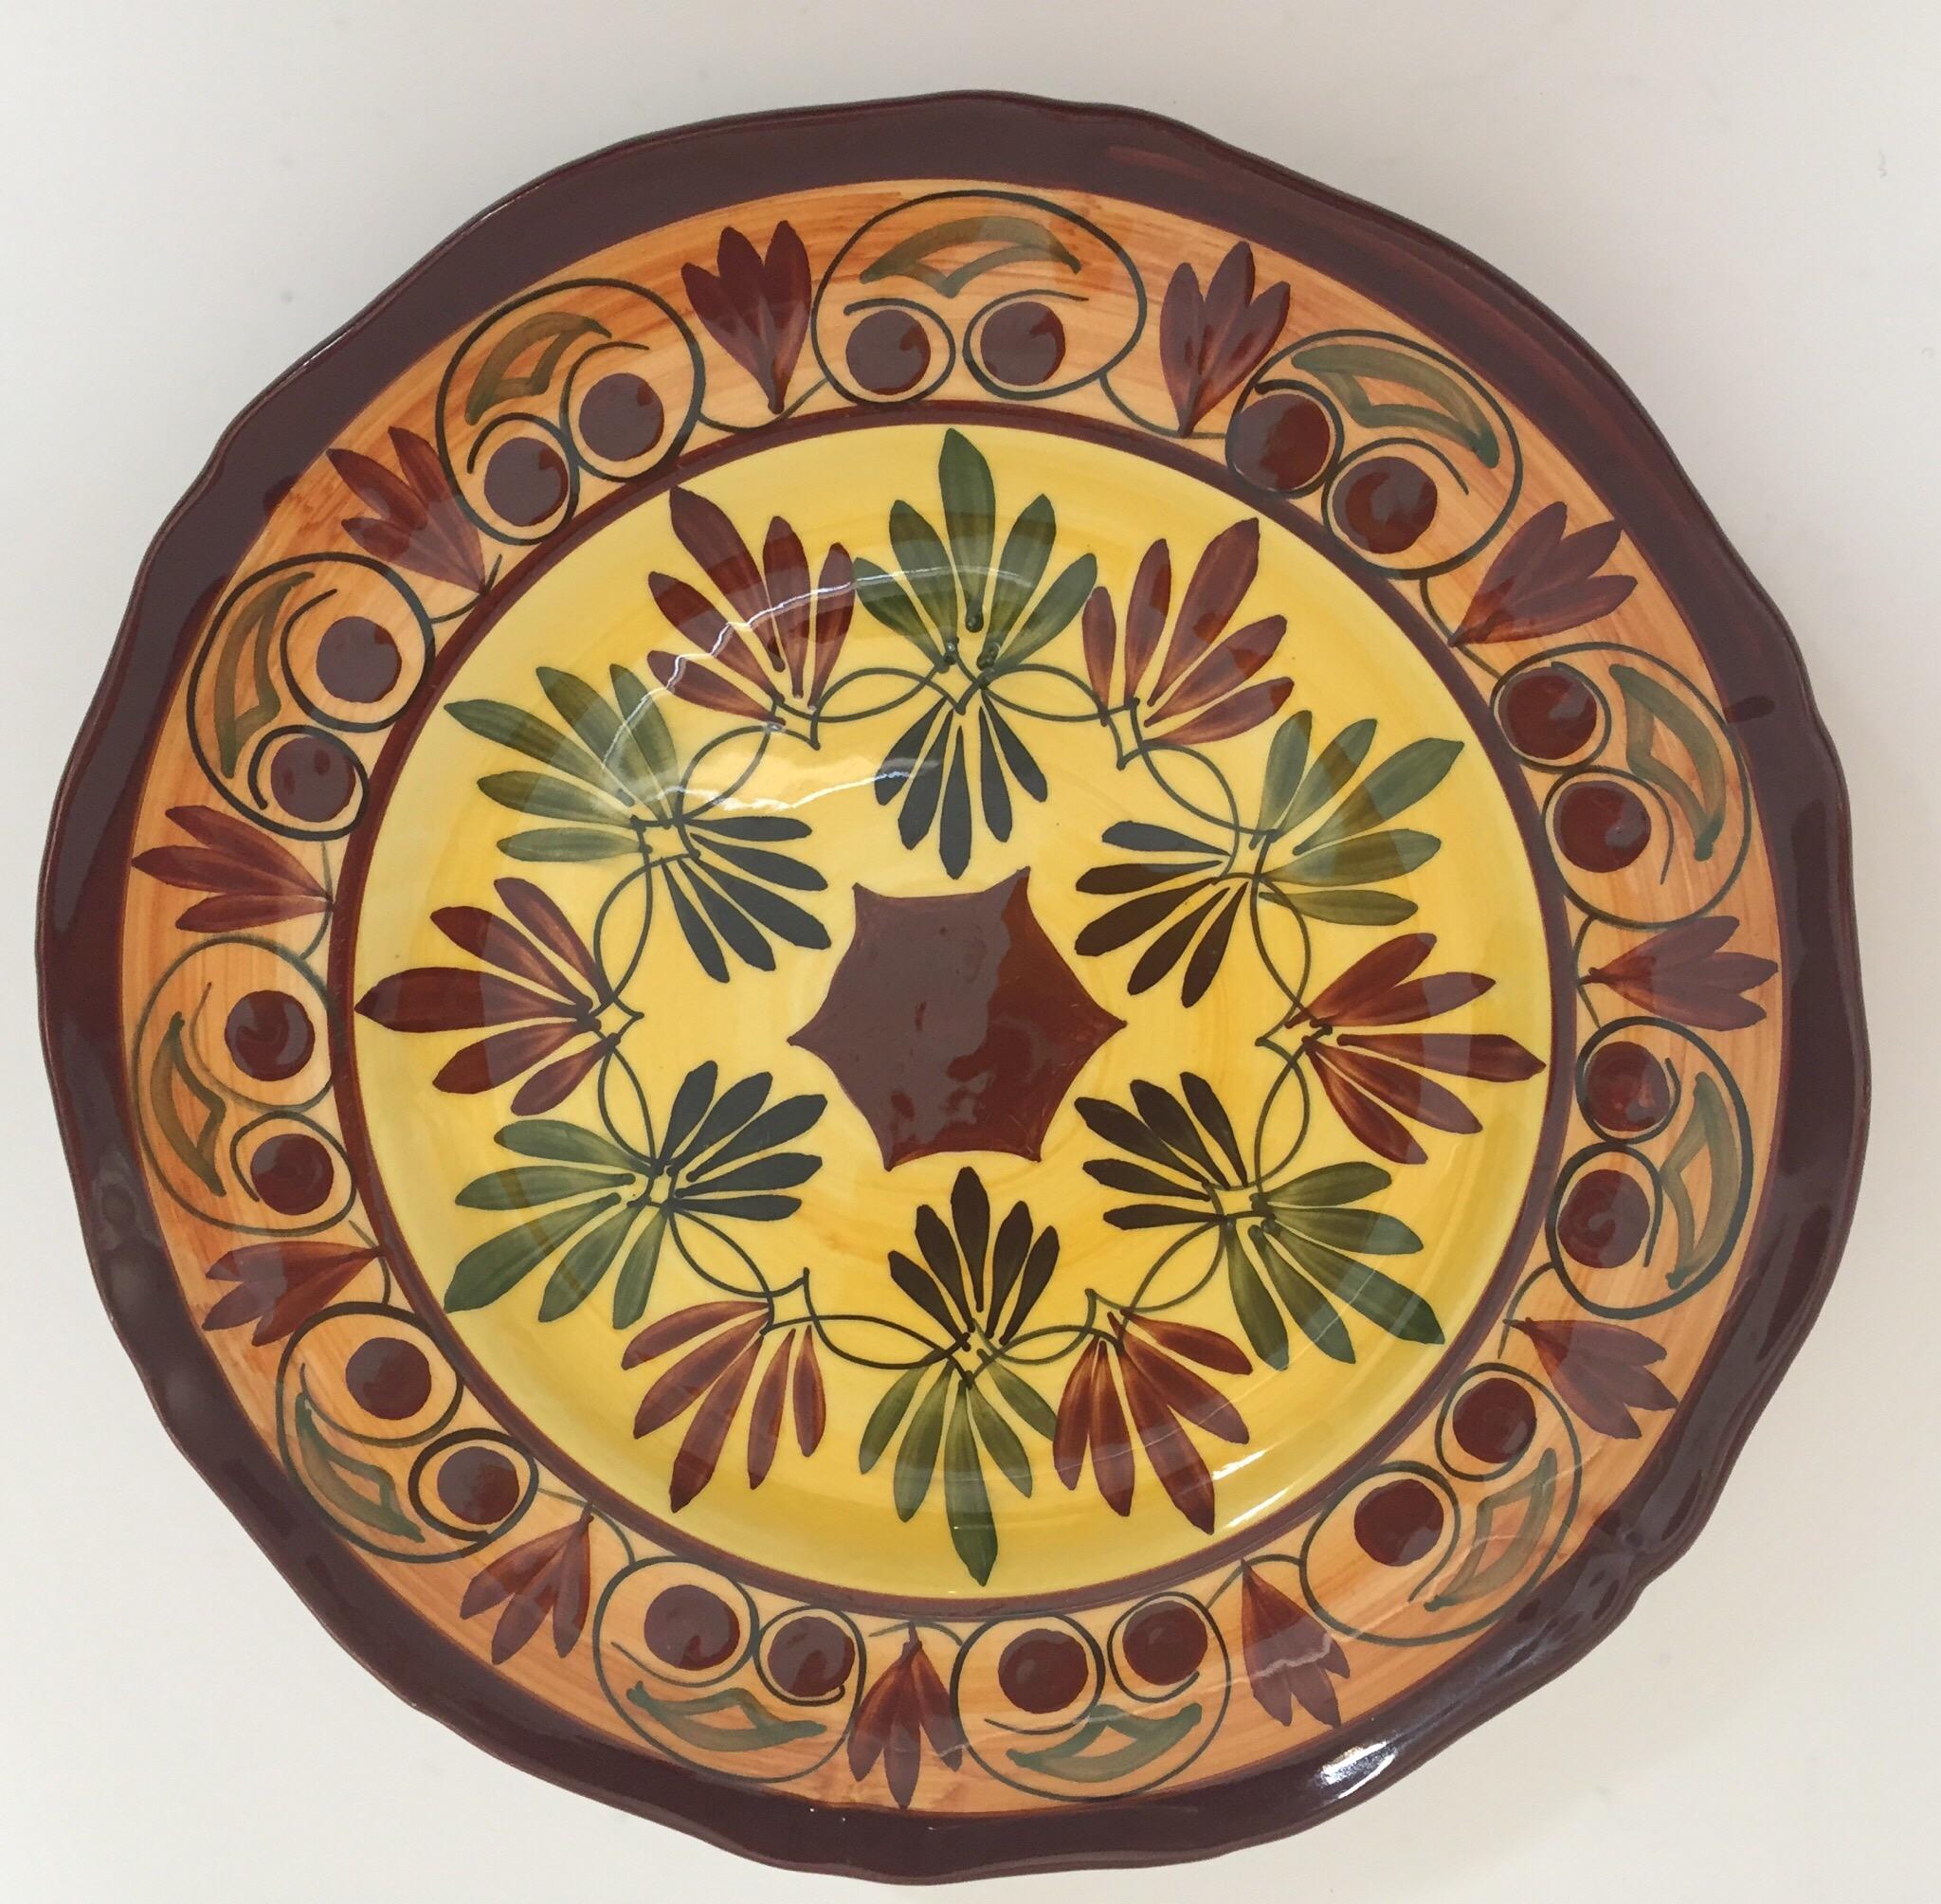 Polychromer handbemalter und handgefertigter Wandteller aus Keramik mit polychromem Blumenmuster. 
Es hat eine wunderschön handgemalte Blumen in Burgunderrot, Gelb und grünem Laub. 
Die Rückseite der Platte ist signiert. 
